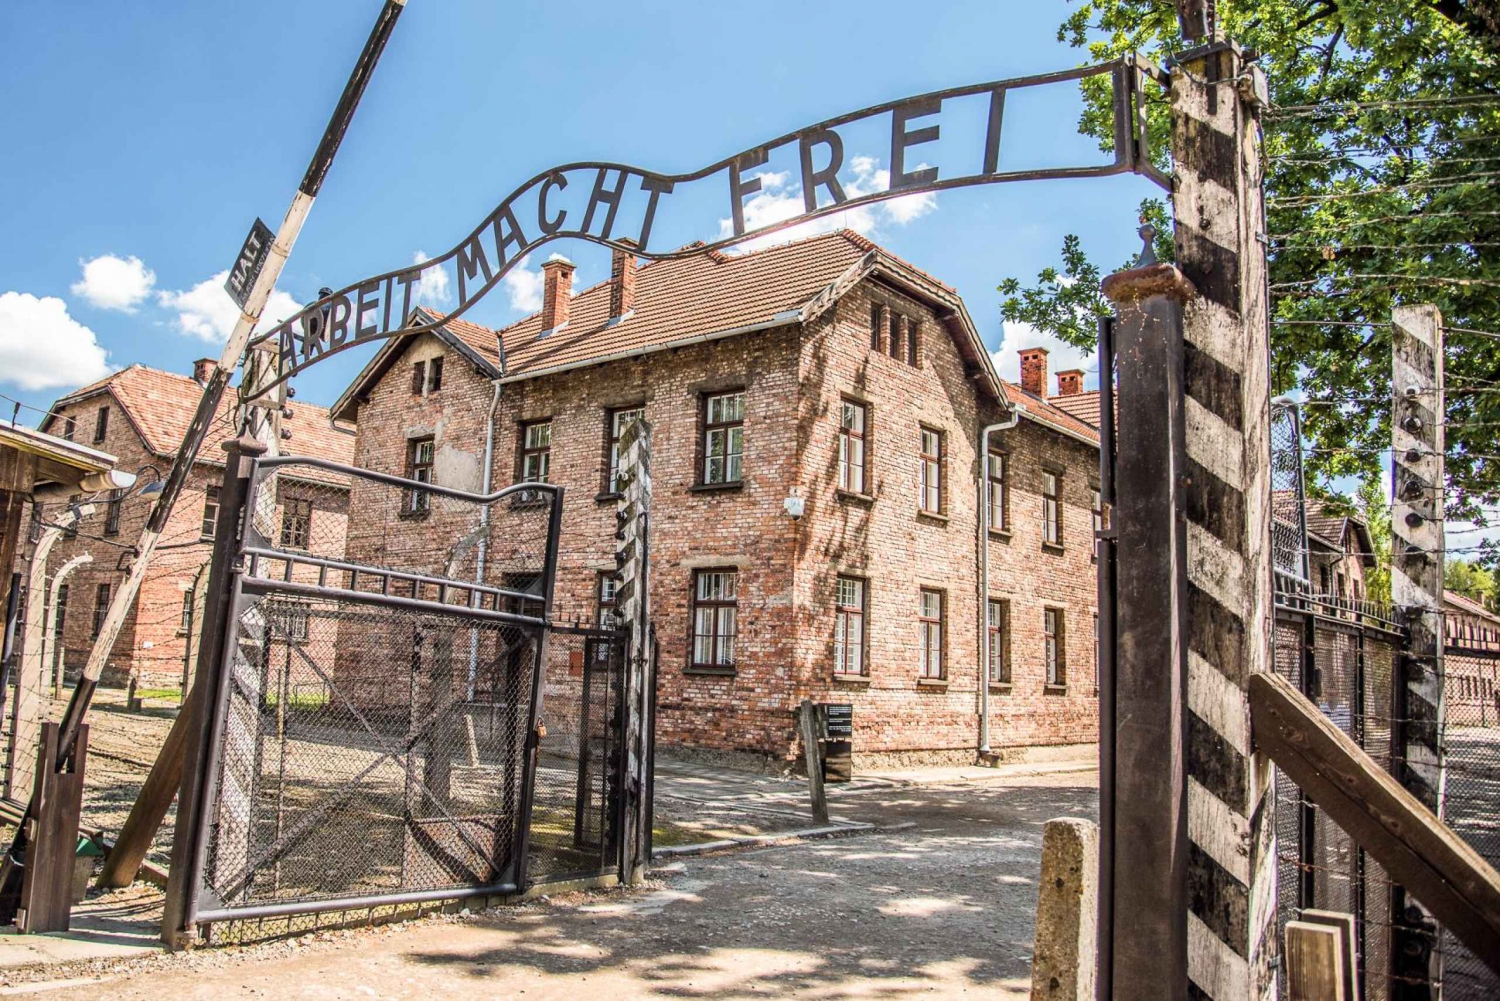 Depuis Cracovie : Excursion d'une journée à Auschwitz et à la mine de sel de Wieliczka